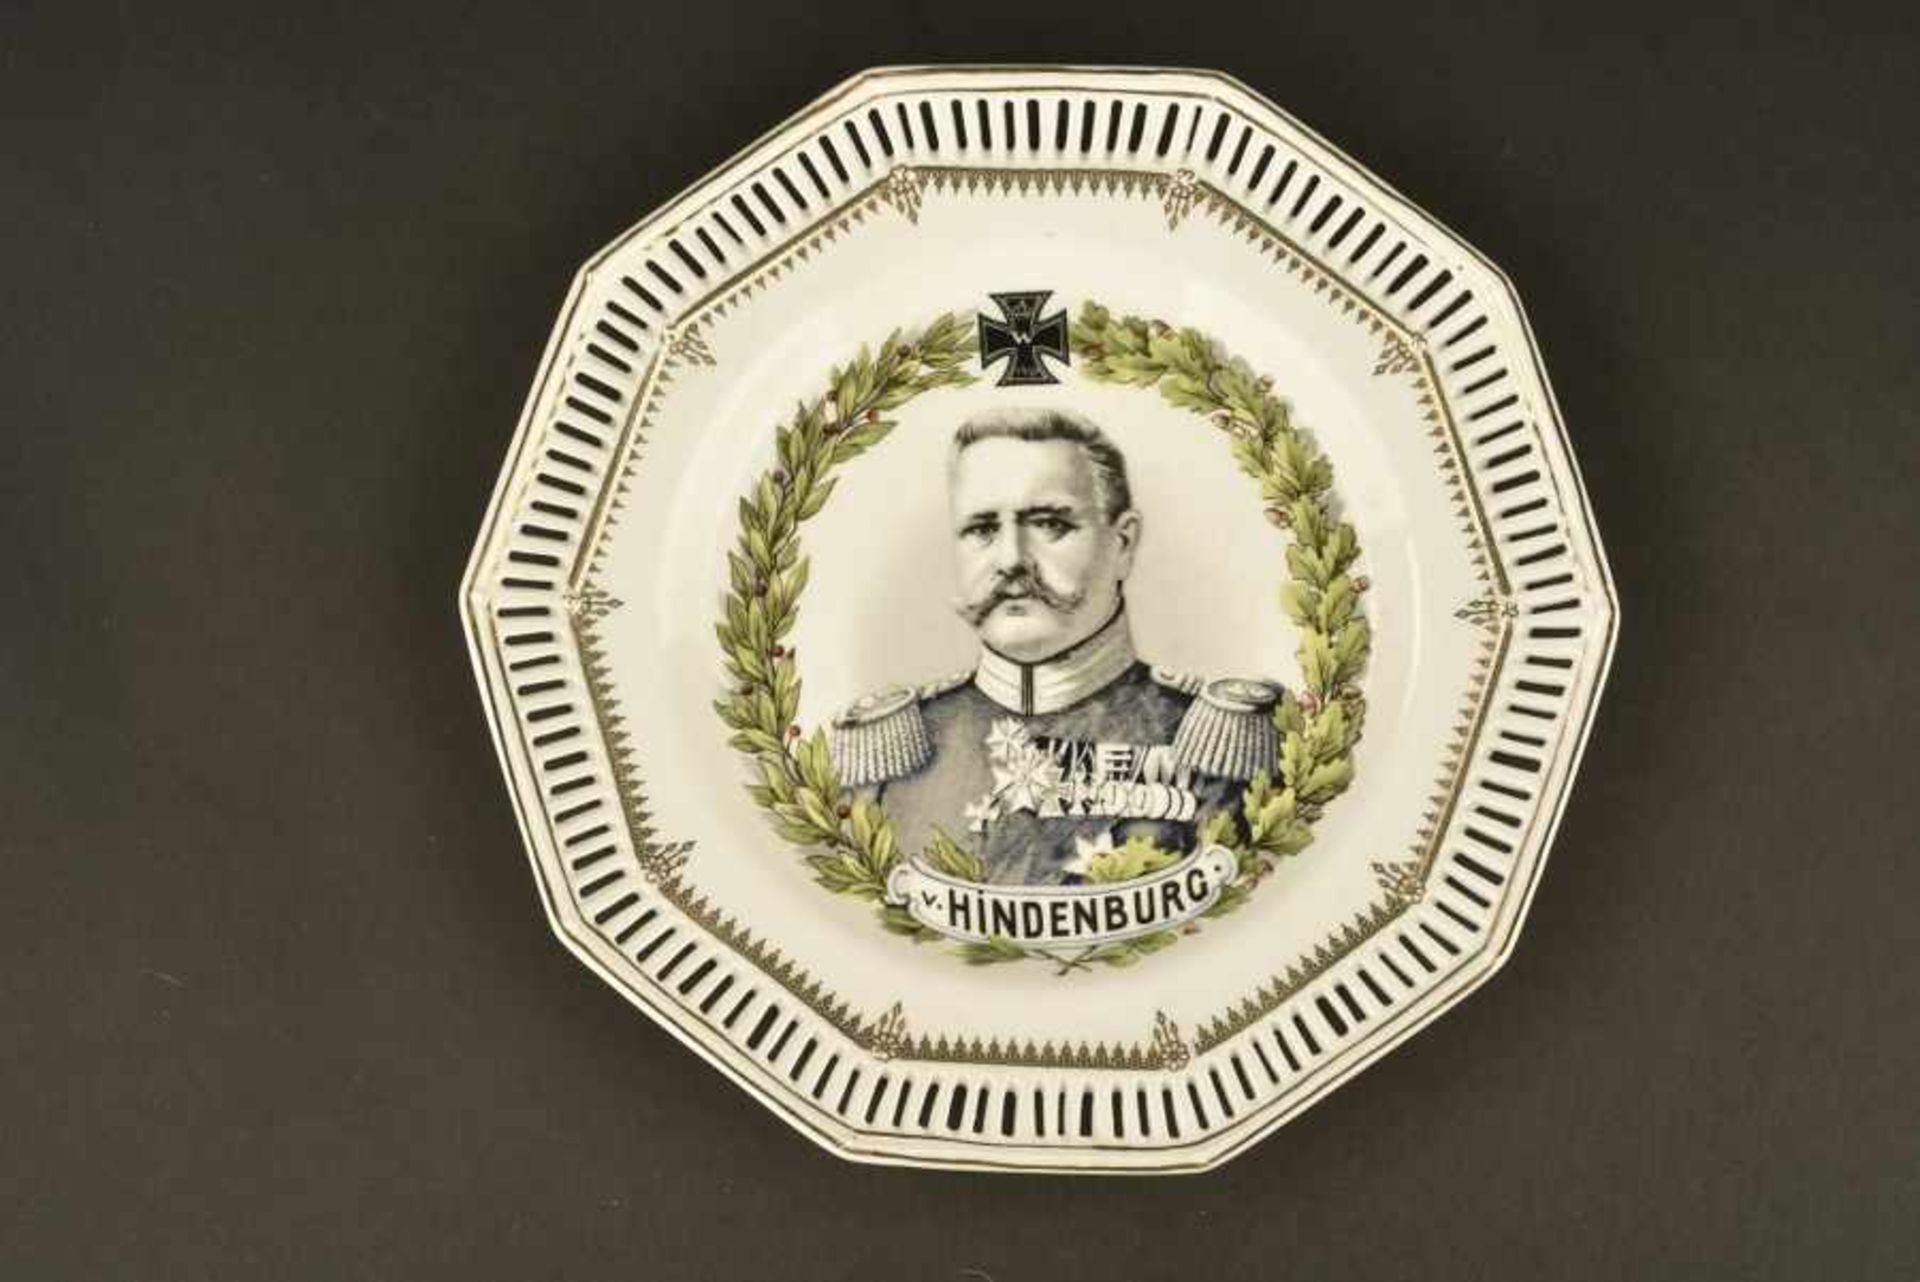 Assiette décorative HindenburgEn porcelaine blanche, bordure ajourée. Portrait central d'Hindenburg.